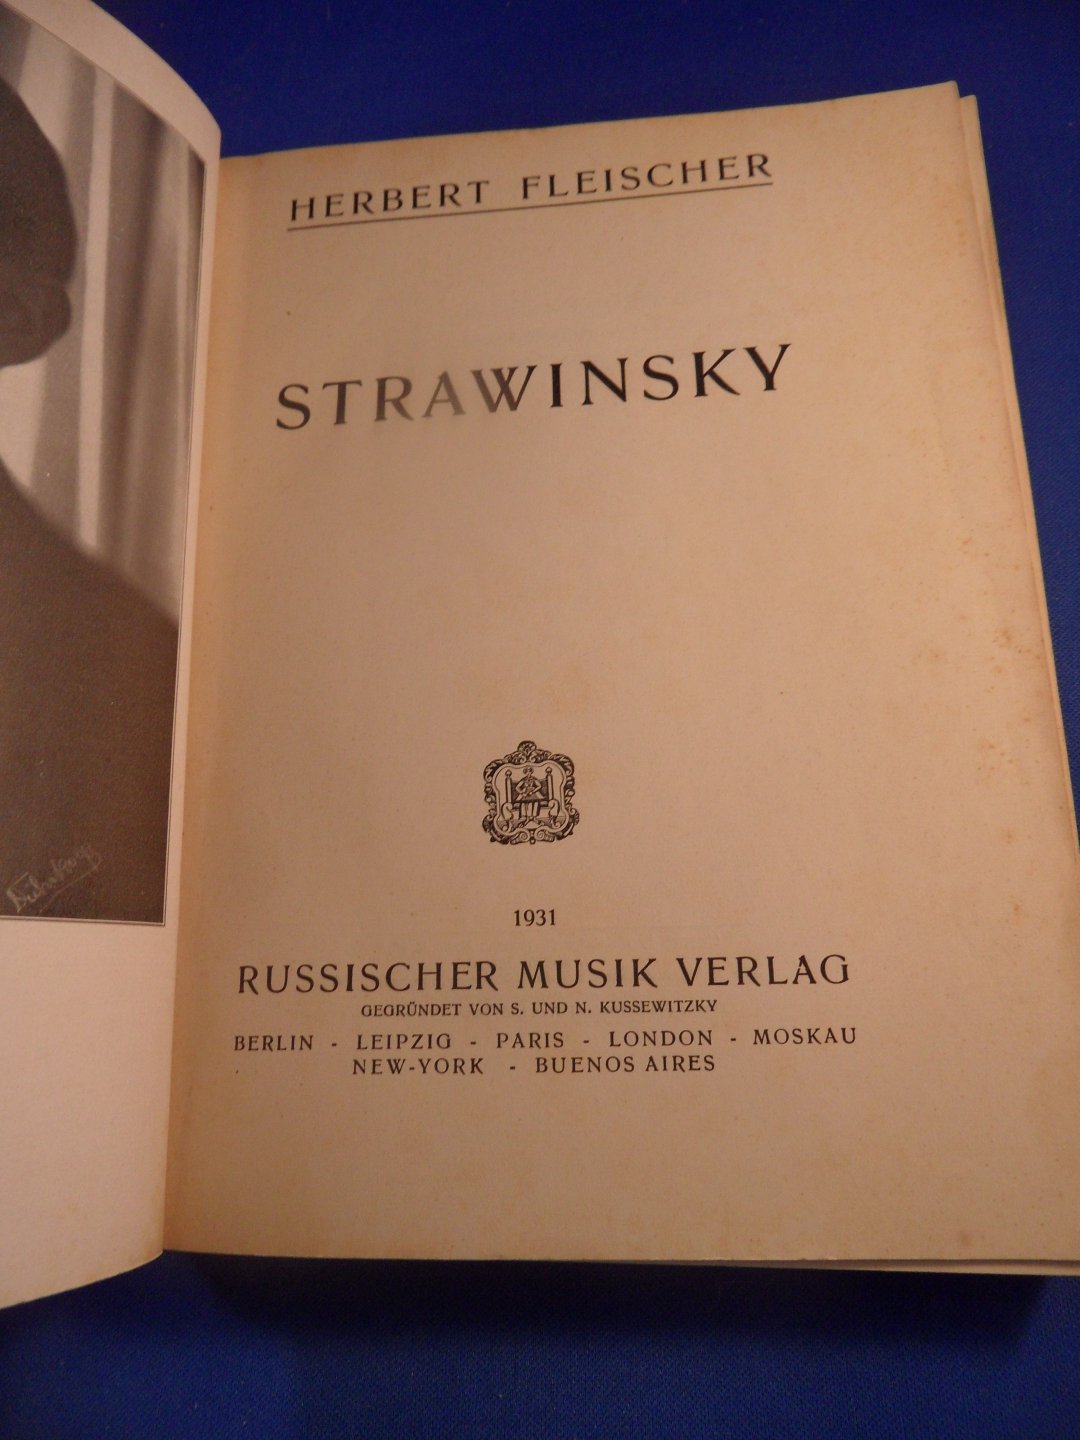 Fleischer, Herbert - Strawinsky